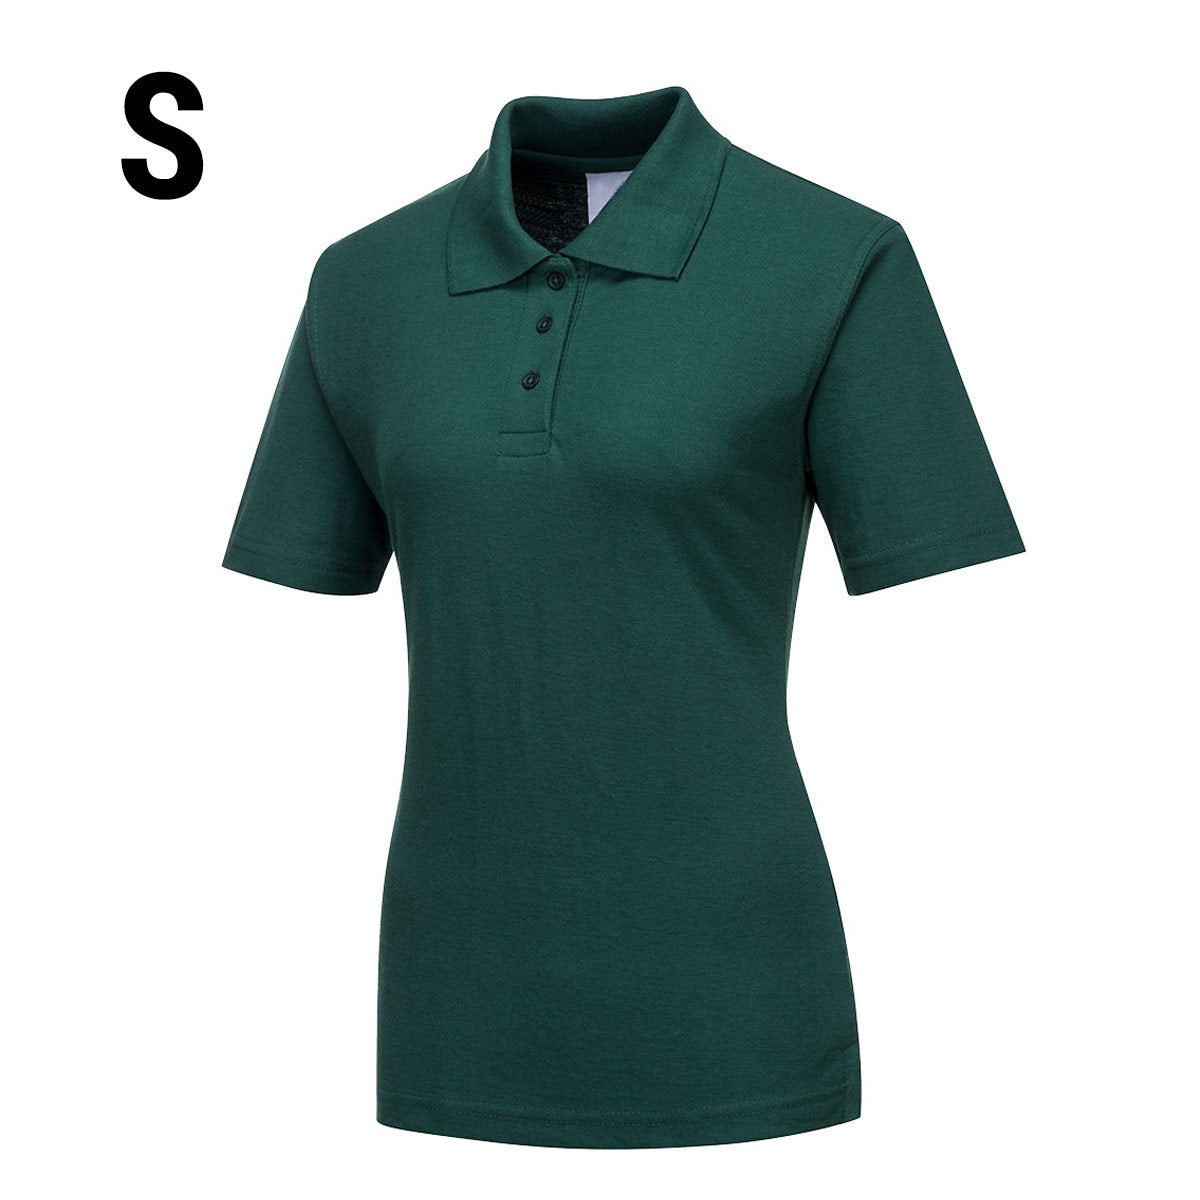 Poloskjorte til damer - Flaske grønn - størrelse: S